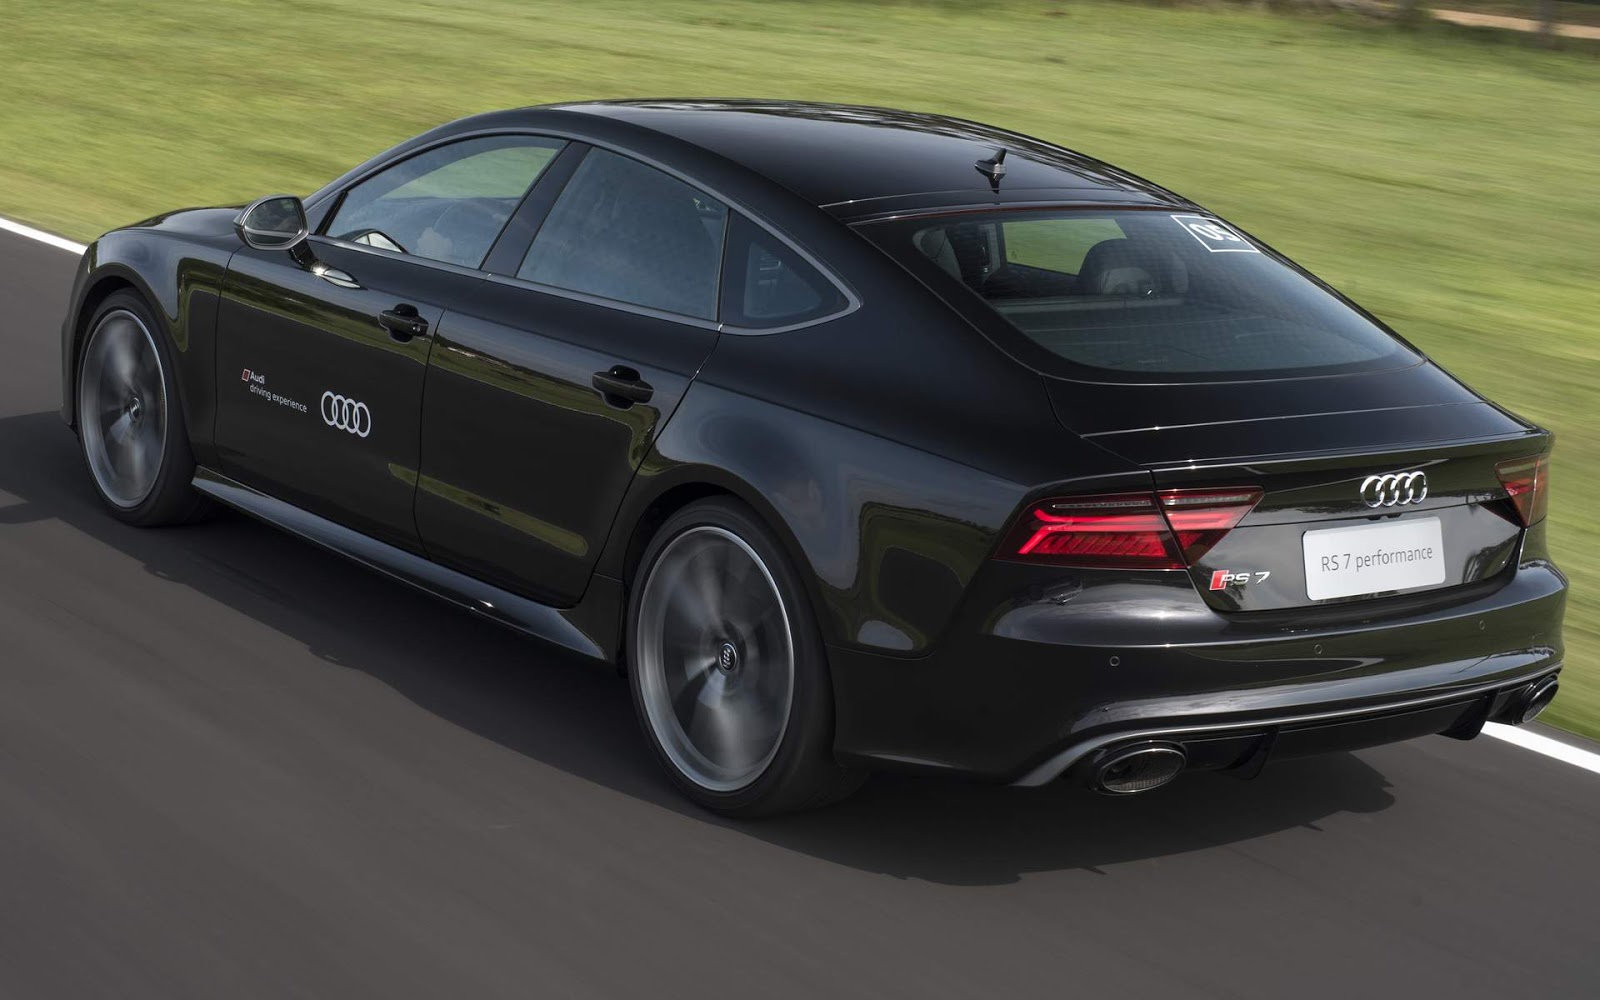 Novo Audi RS 7 acelera como um GT, mas com conforto de sedã executivo